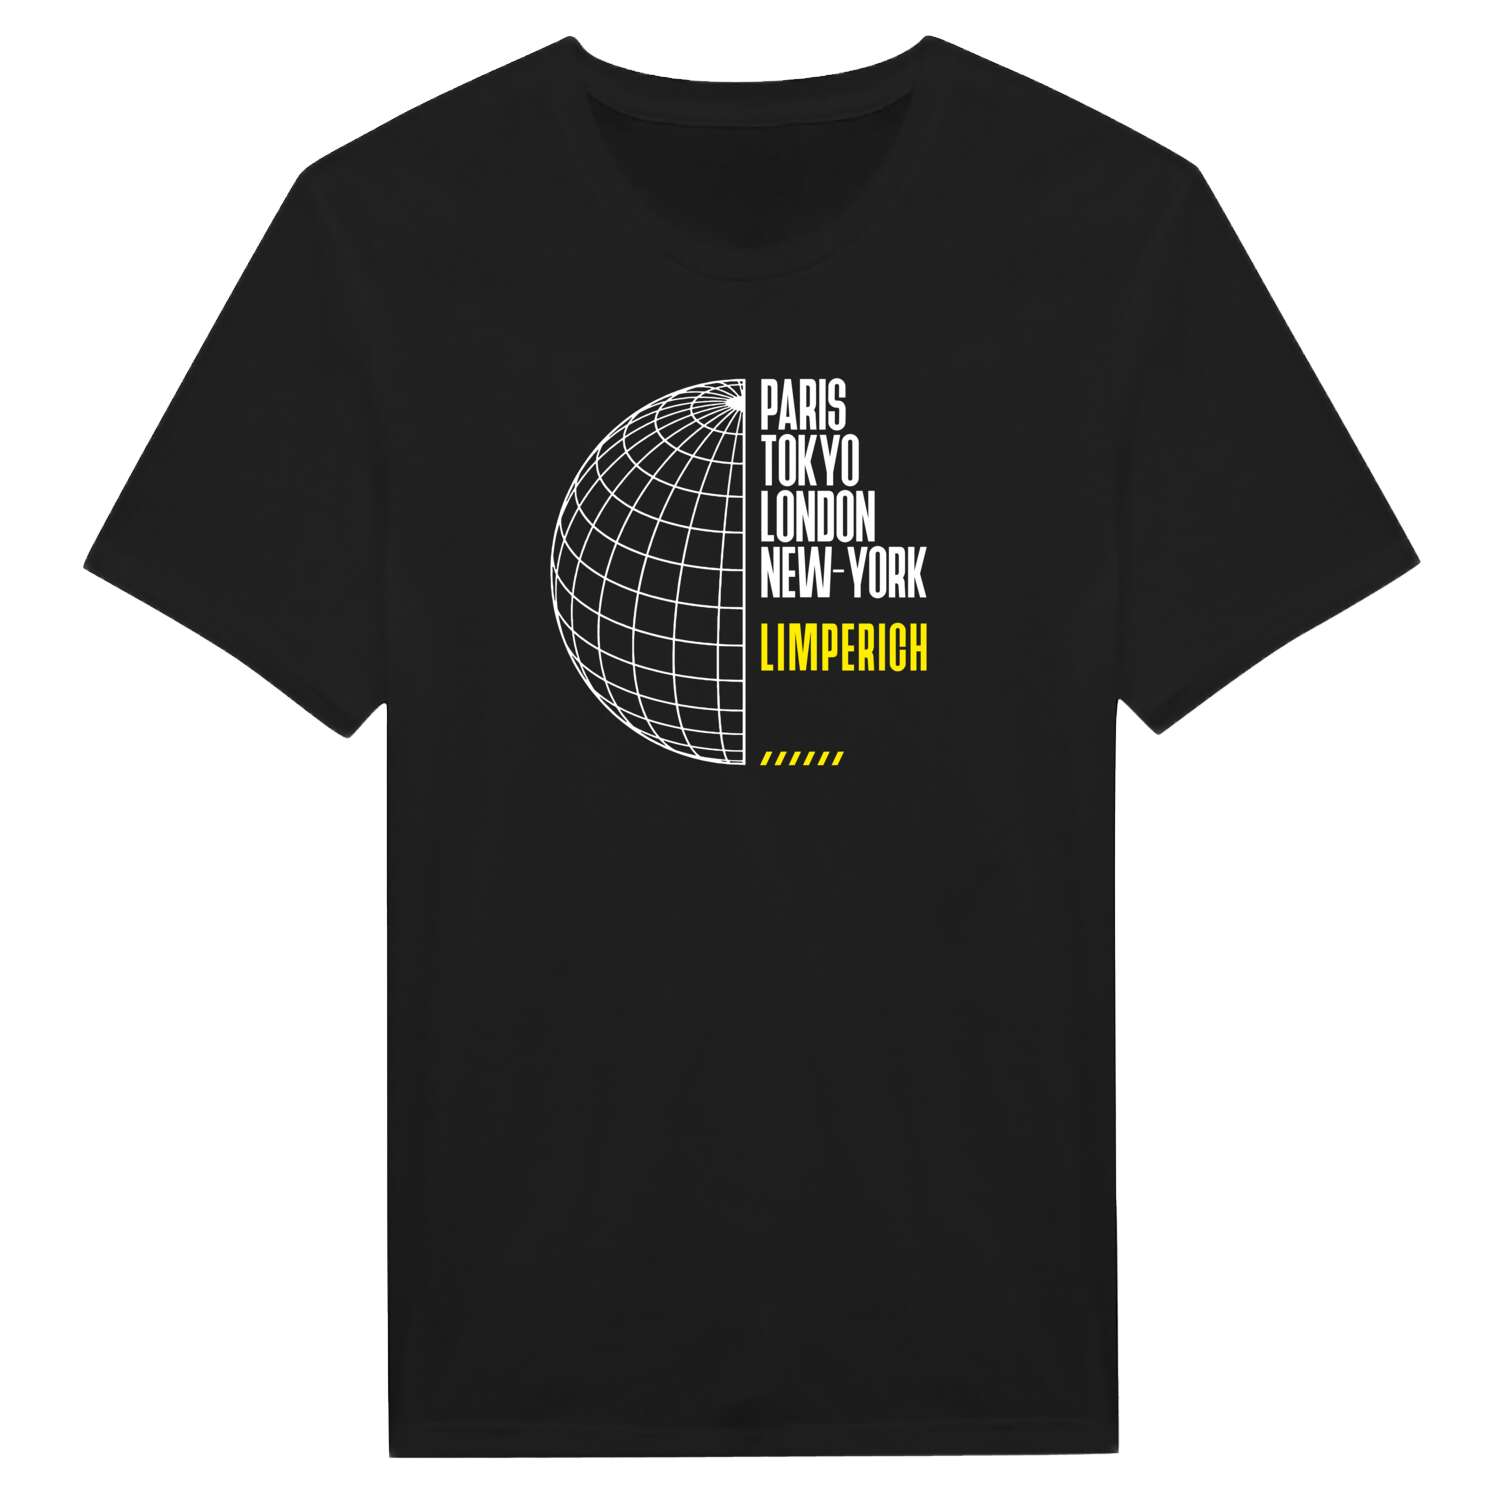 Limperich T-Shirt »Paris Tokyo London«